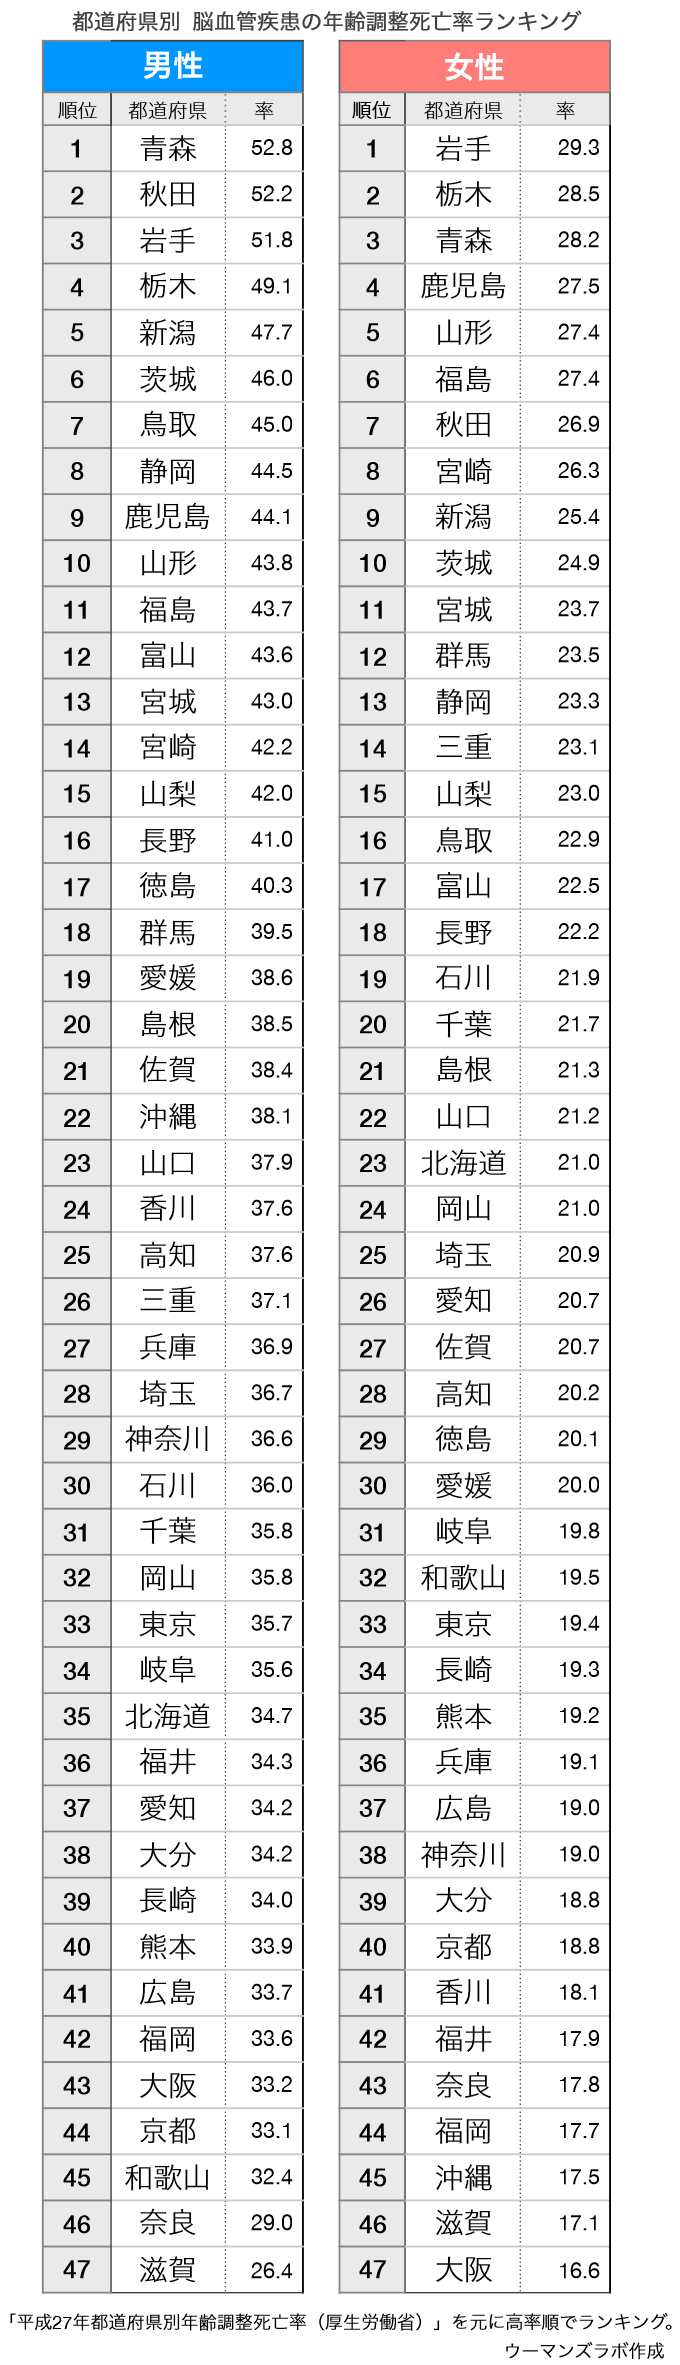 47都道府県の3大死因死亡率ランキング